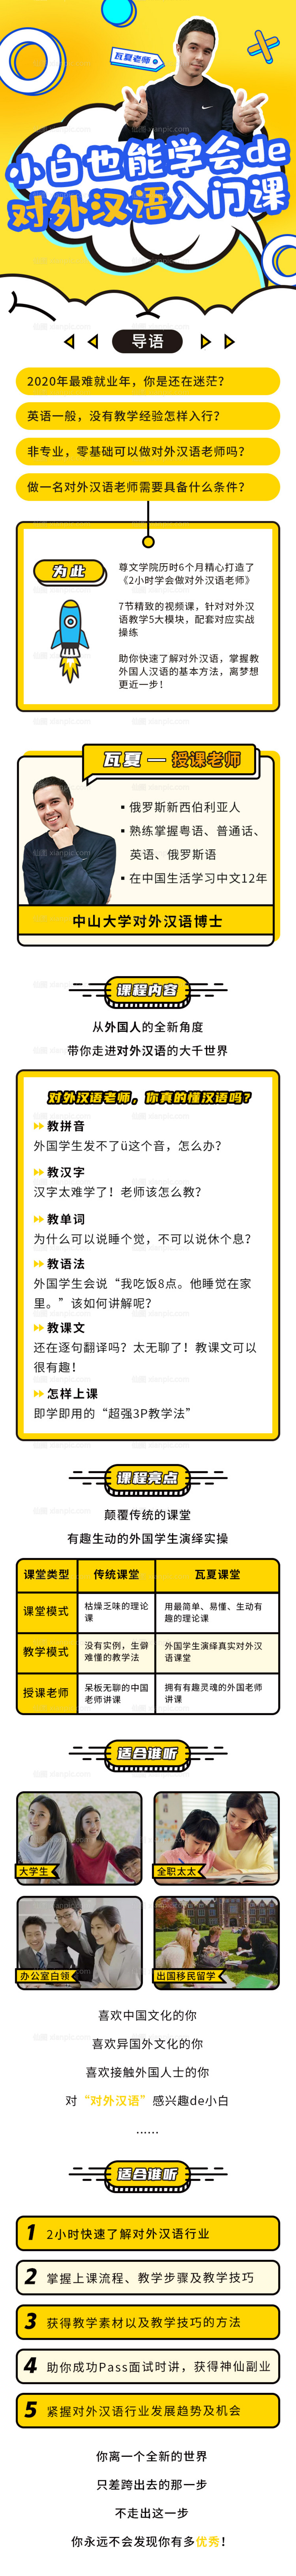 素材乐-小白也能学对外汉语入门课课程专题页